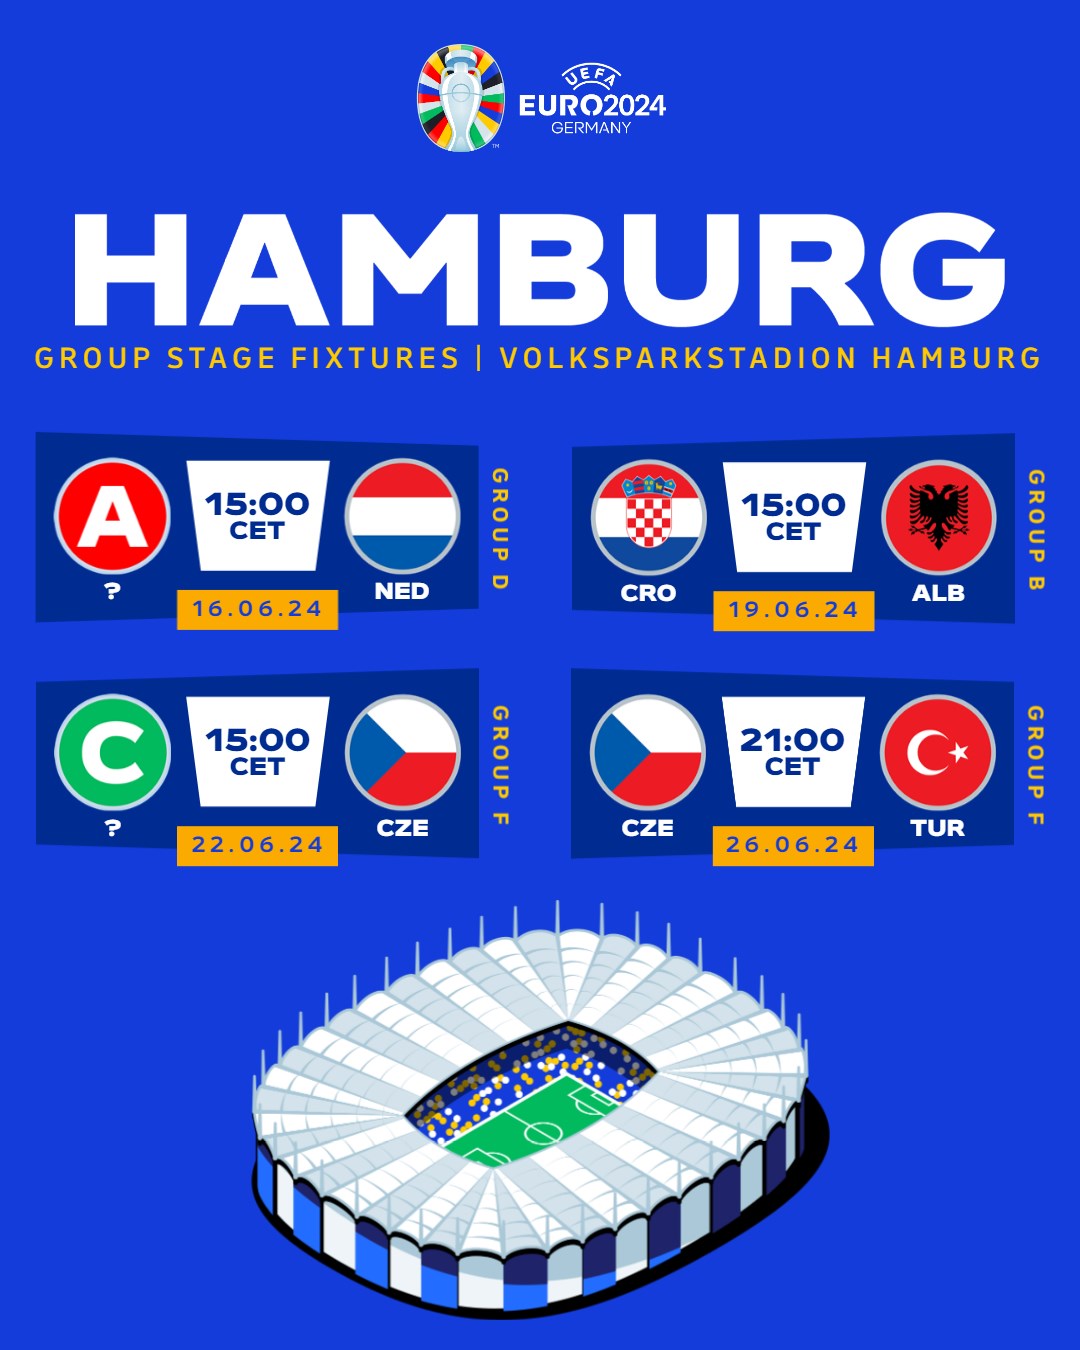 UEFA EURO 2024 Hamburg Marketing